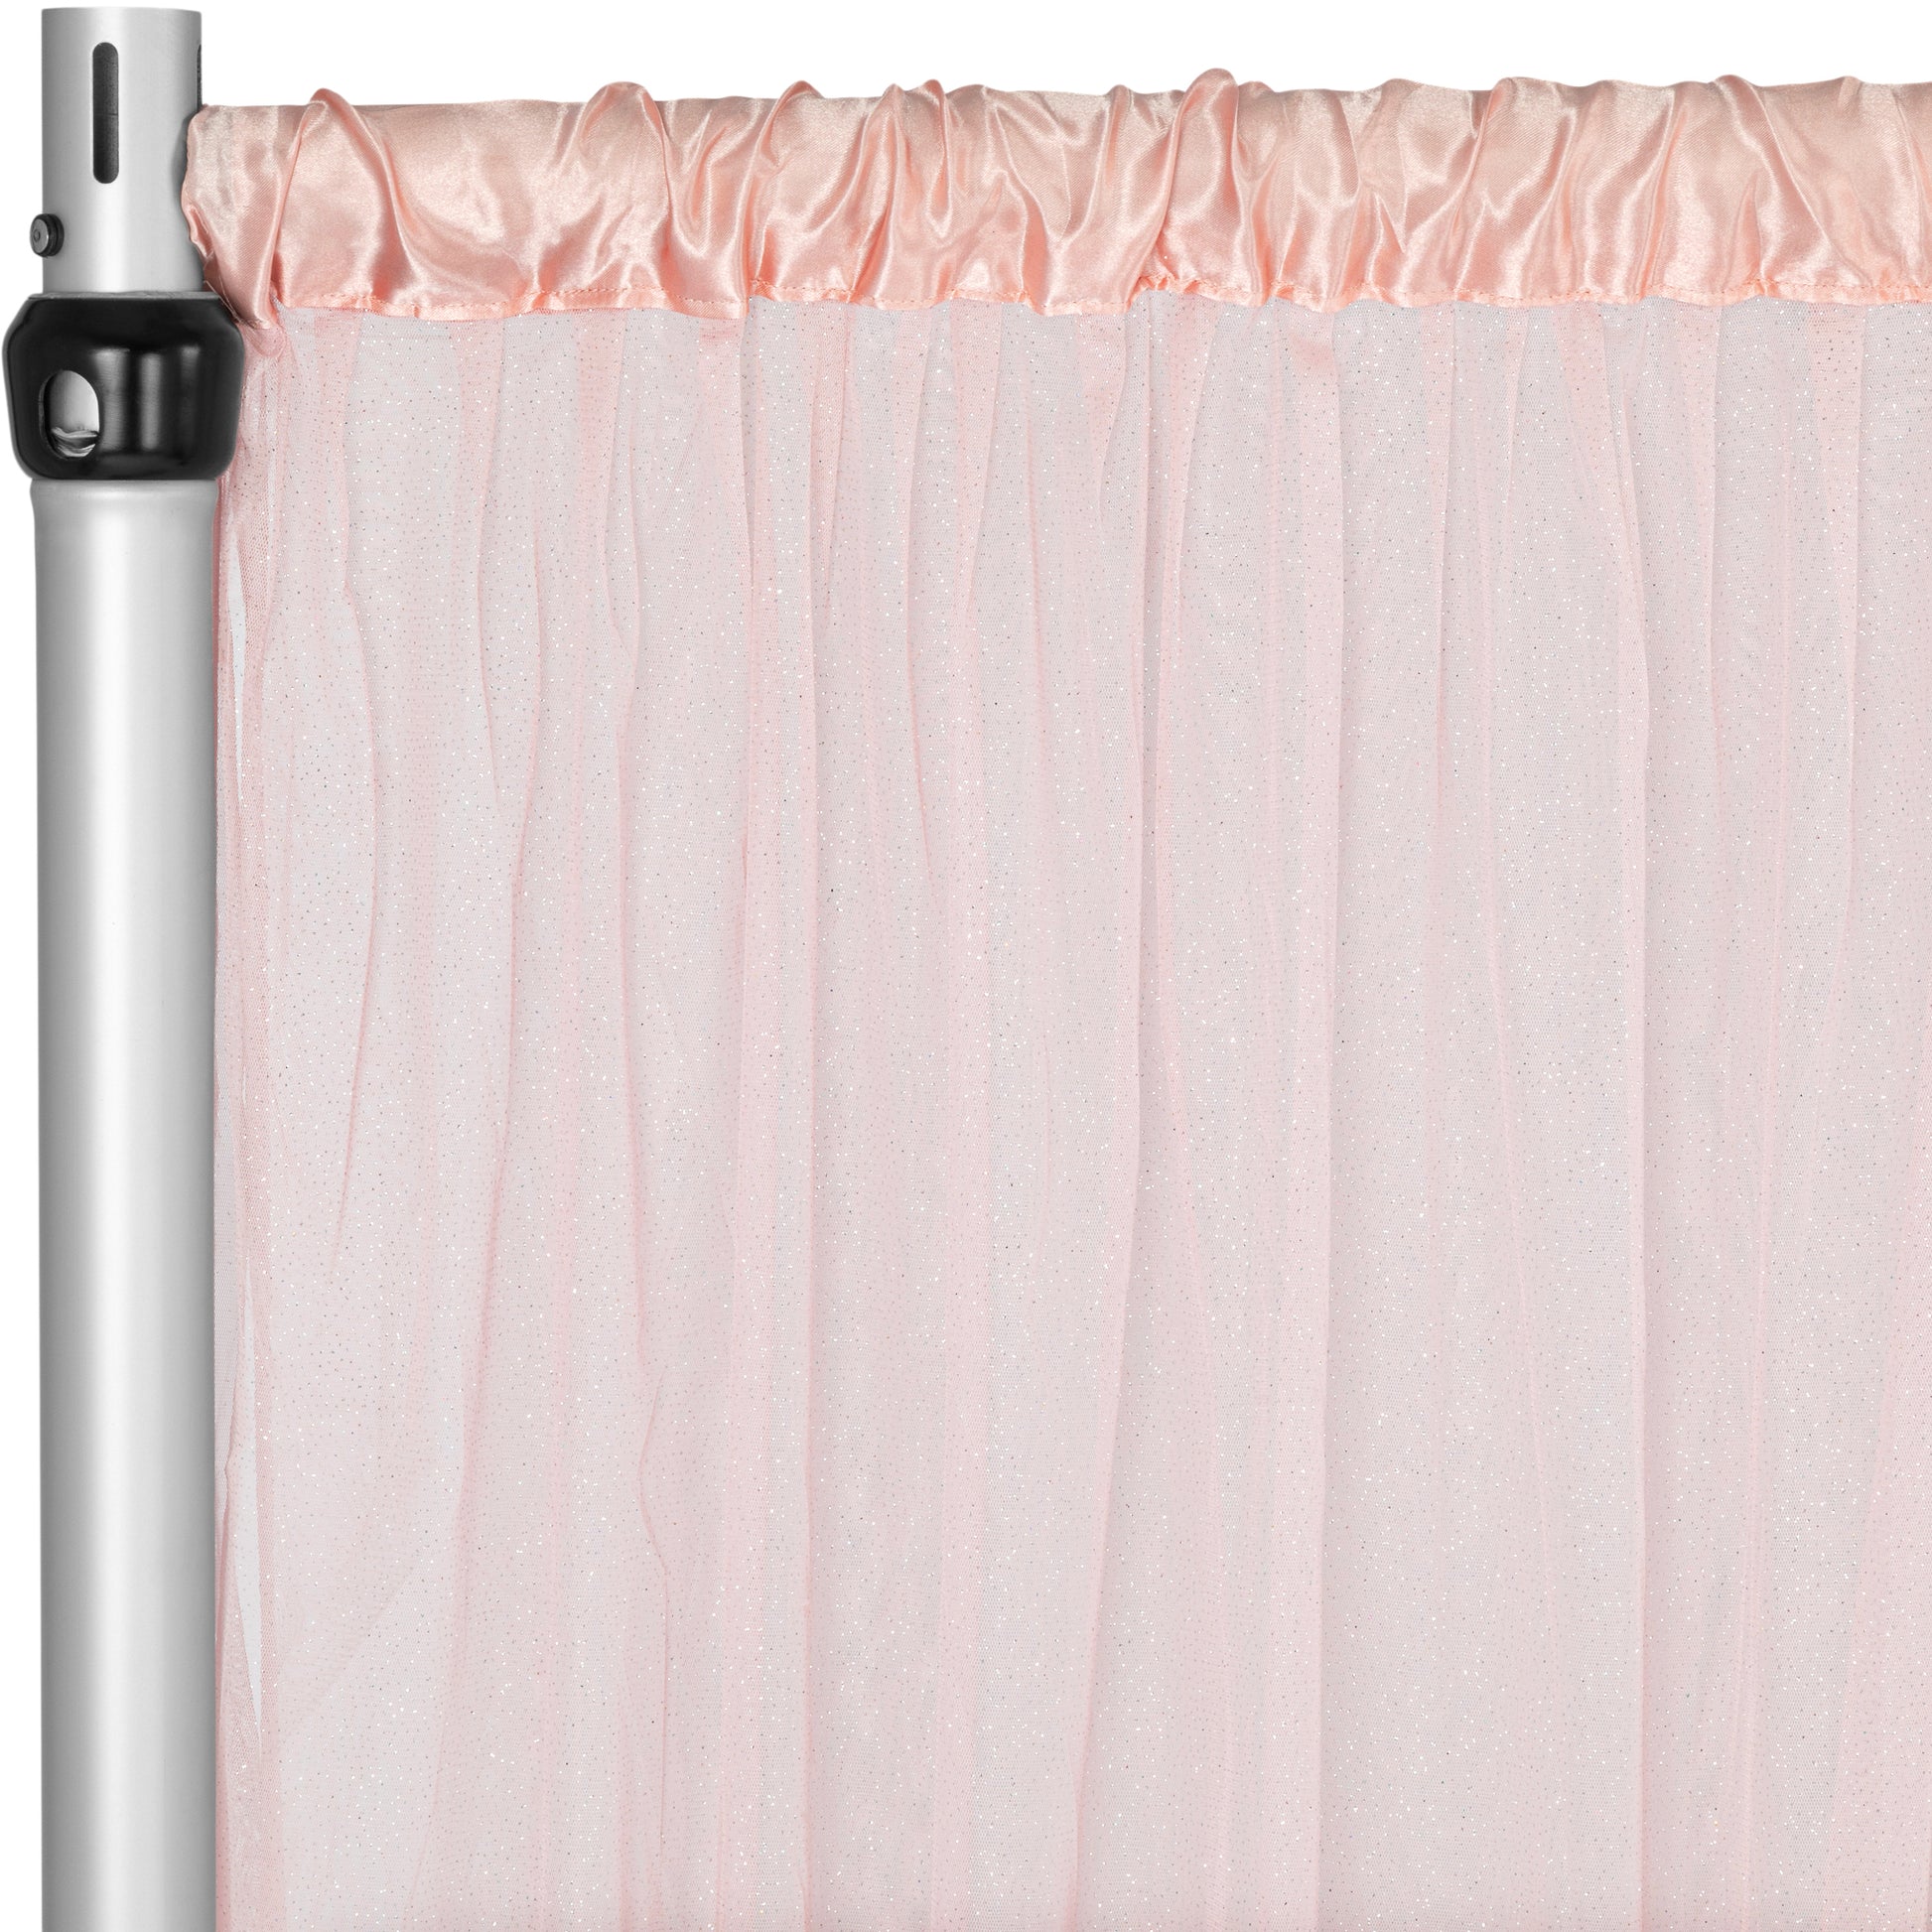 Glitter Tulle Tutu 10ft H x 56" W Drape/Backdrop Curtain Panel - Dusty Rose/Mauve